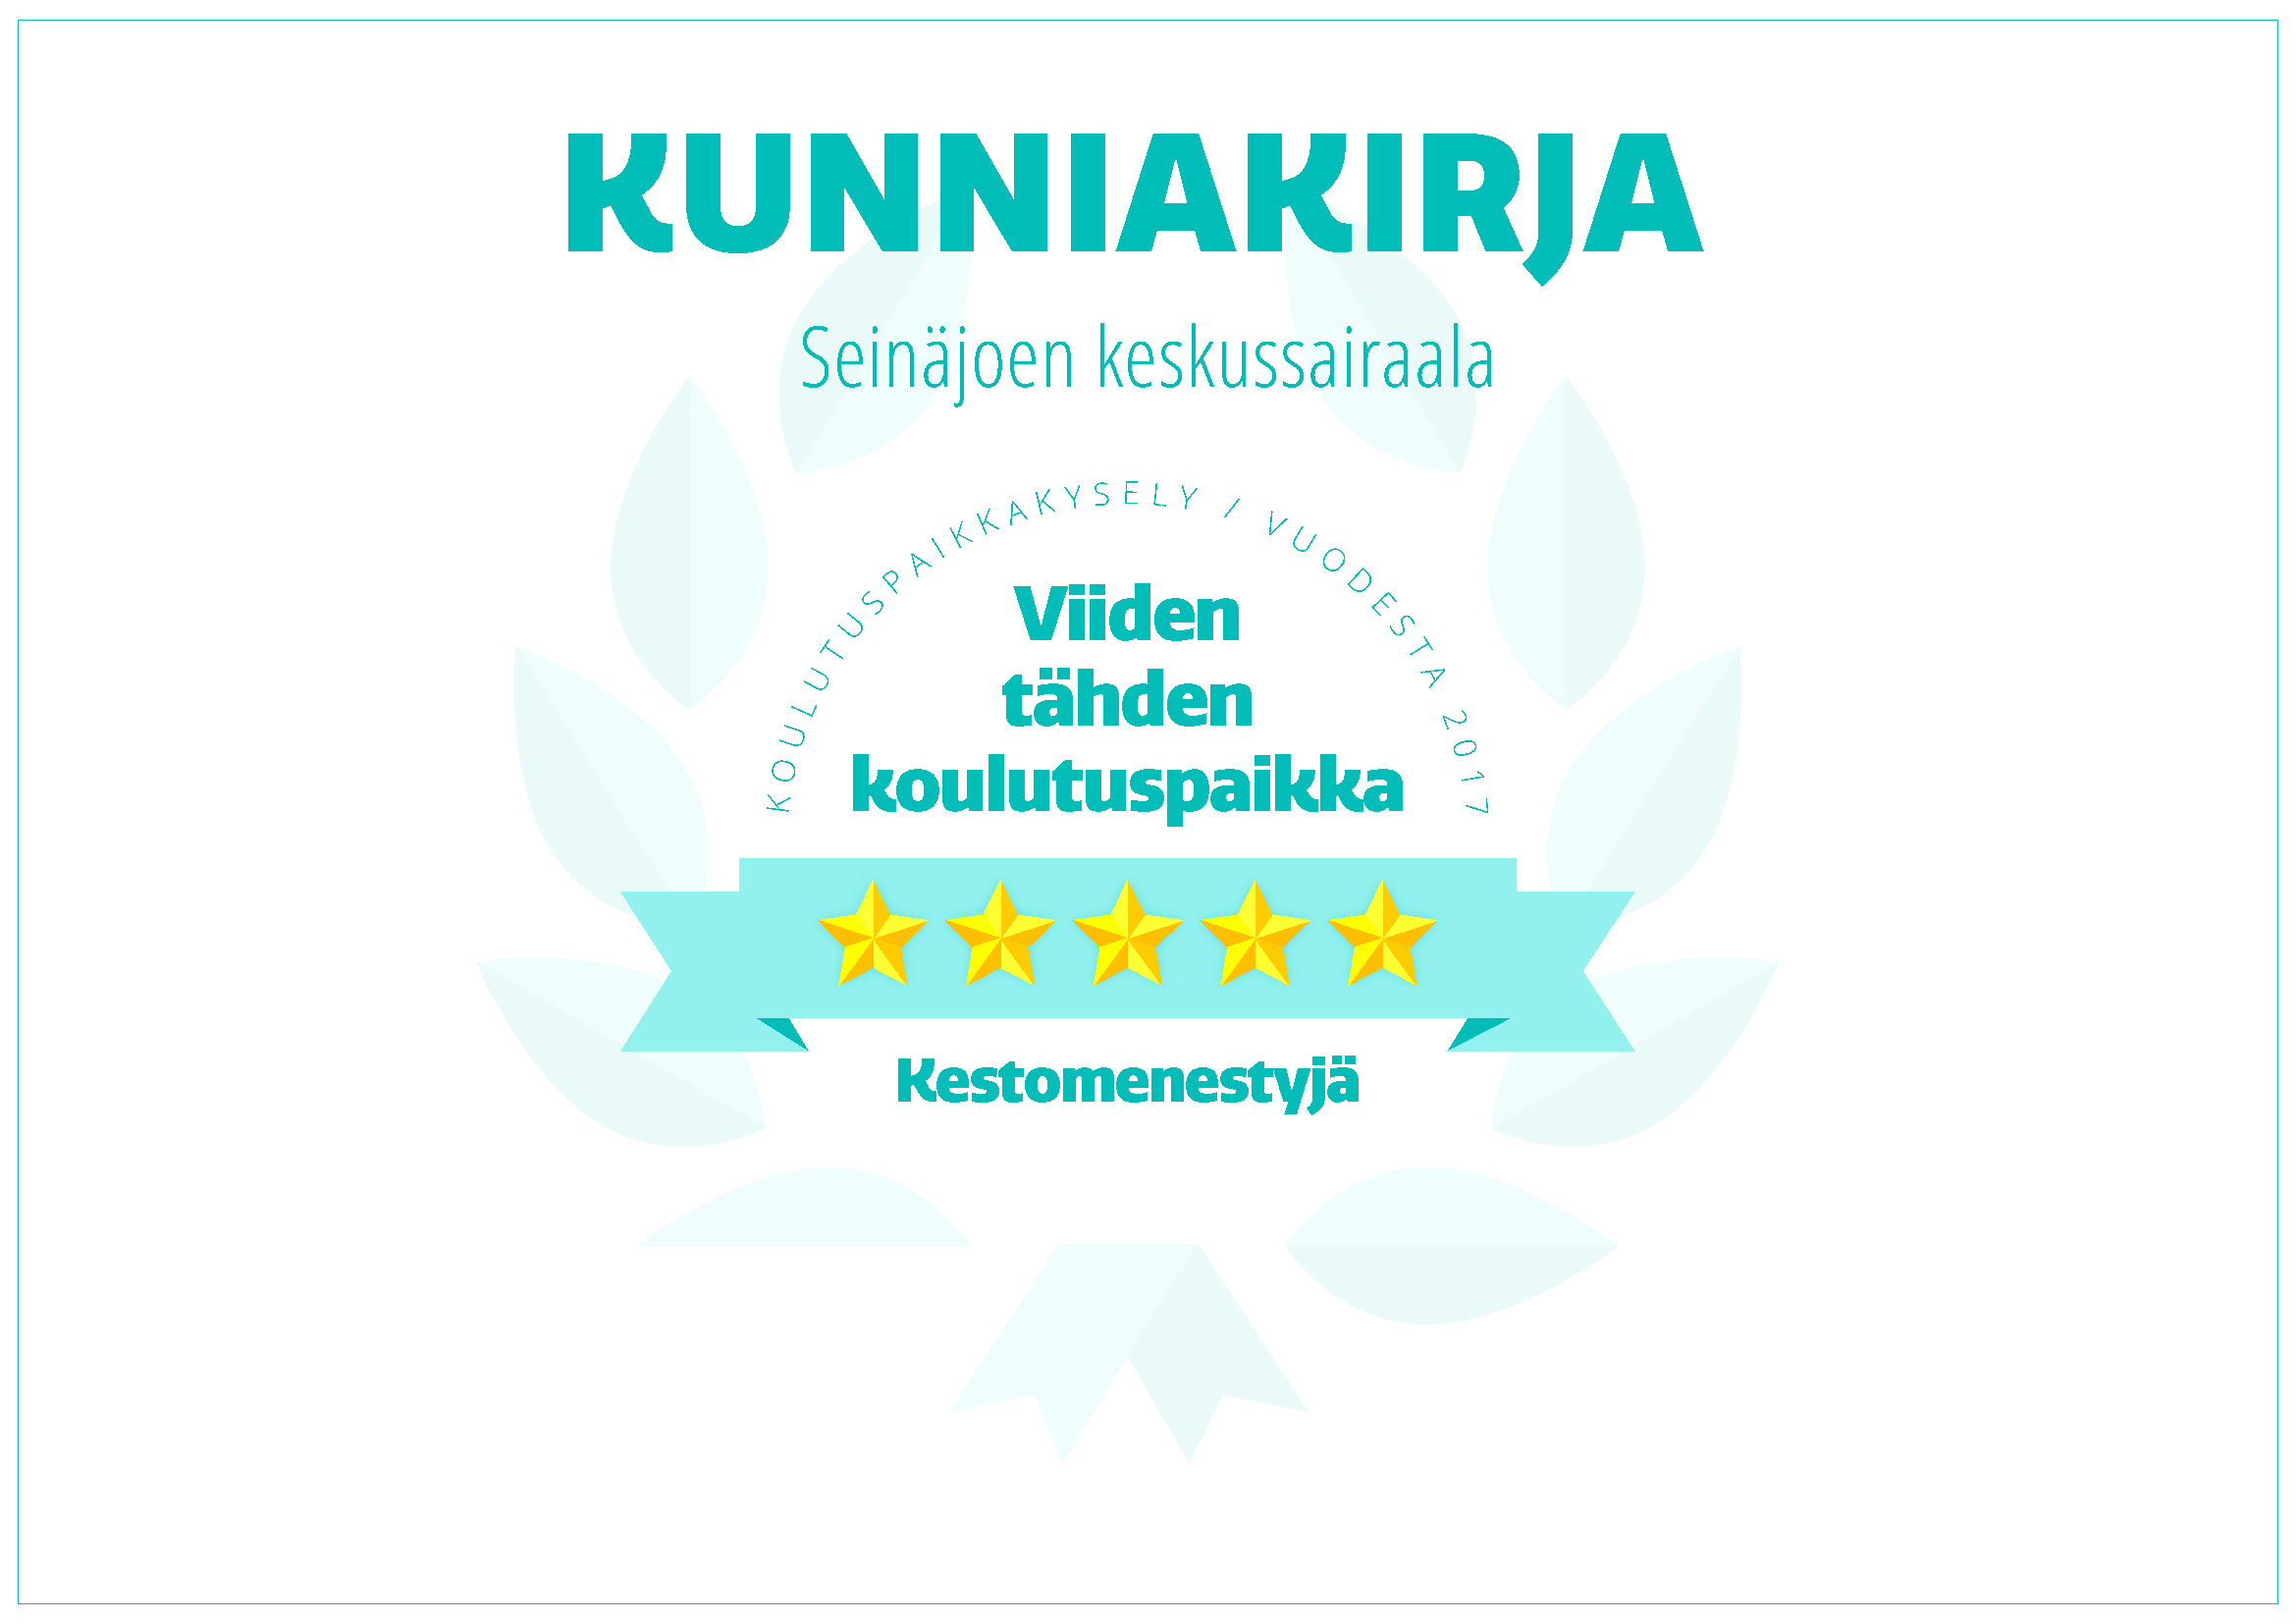 Kunniakirja. Seinäjoen keskussairaala. Koulutuspaikkakysely vuodesta 2017. Viiden tähden koulutuspaikka. Kestomenestyjä.